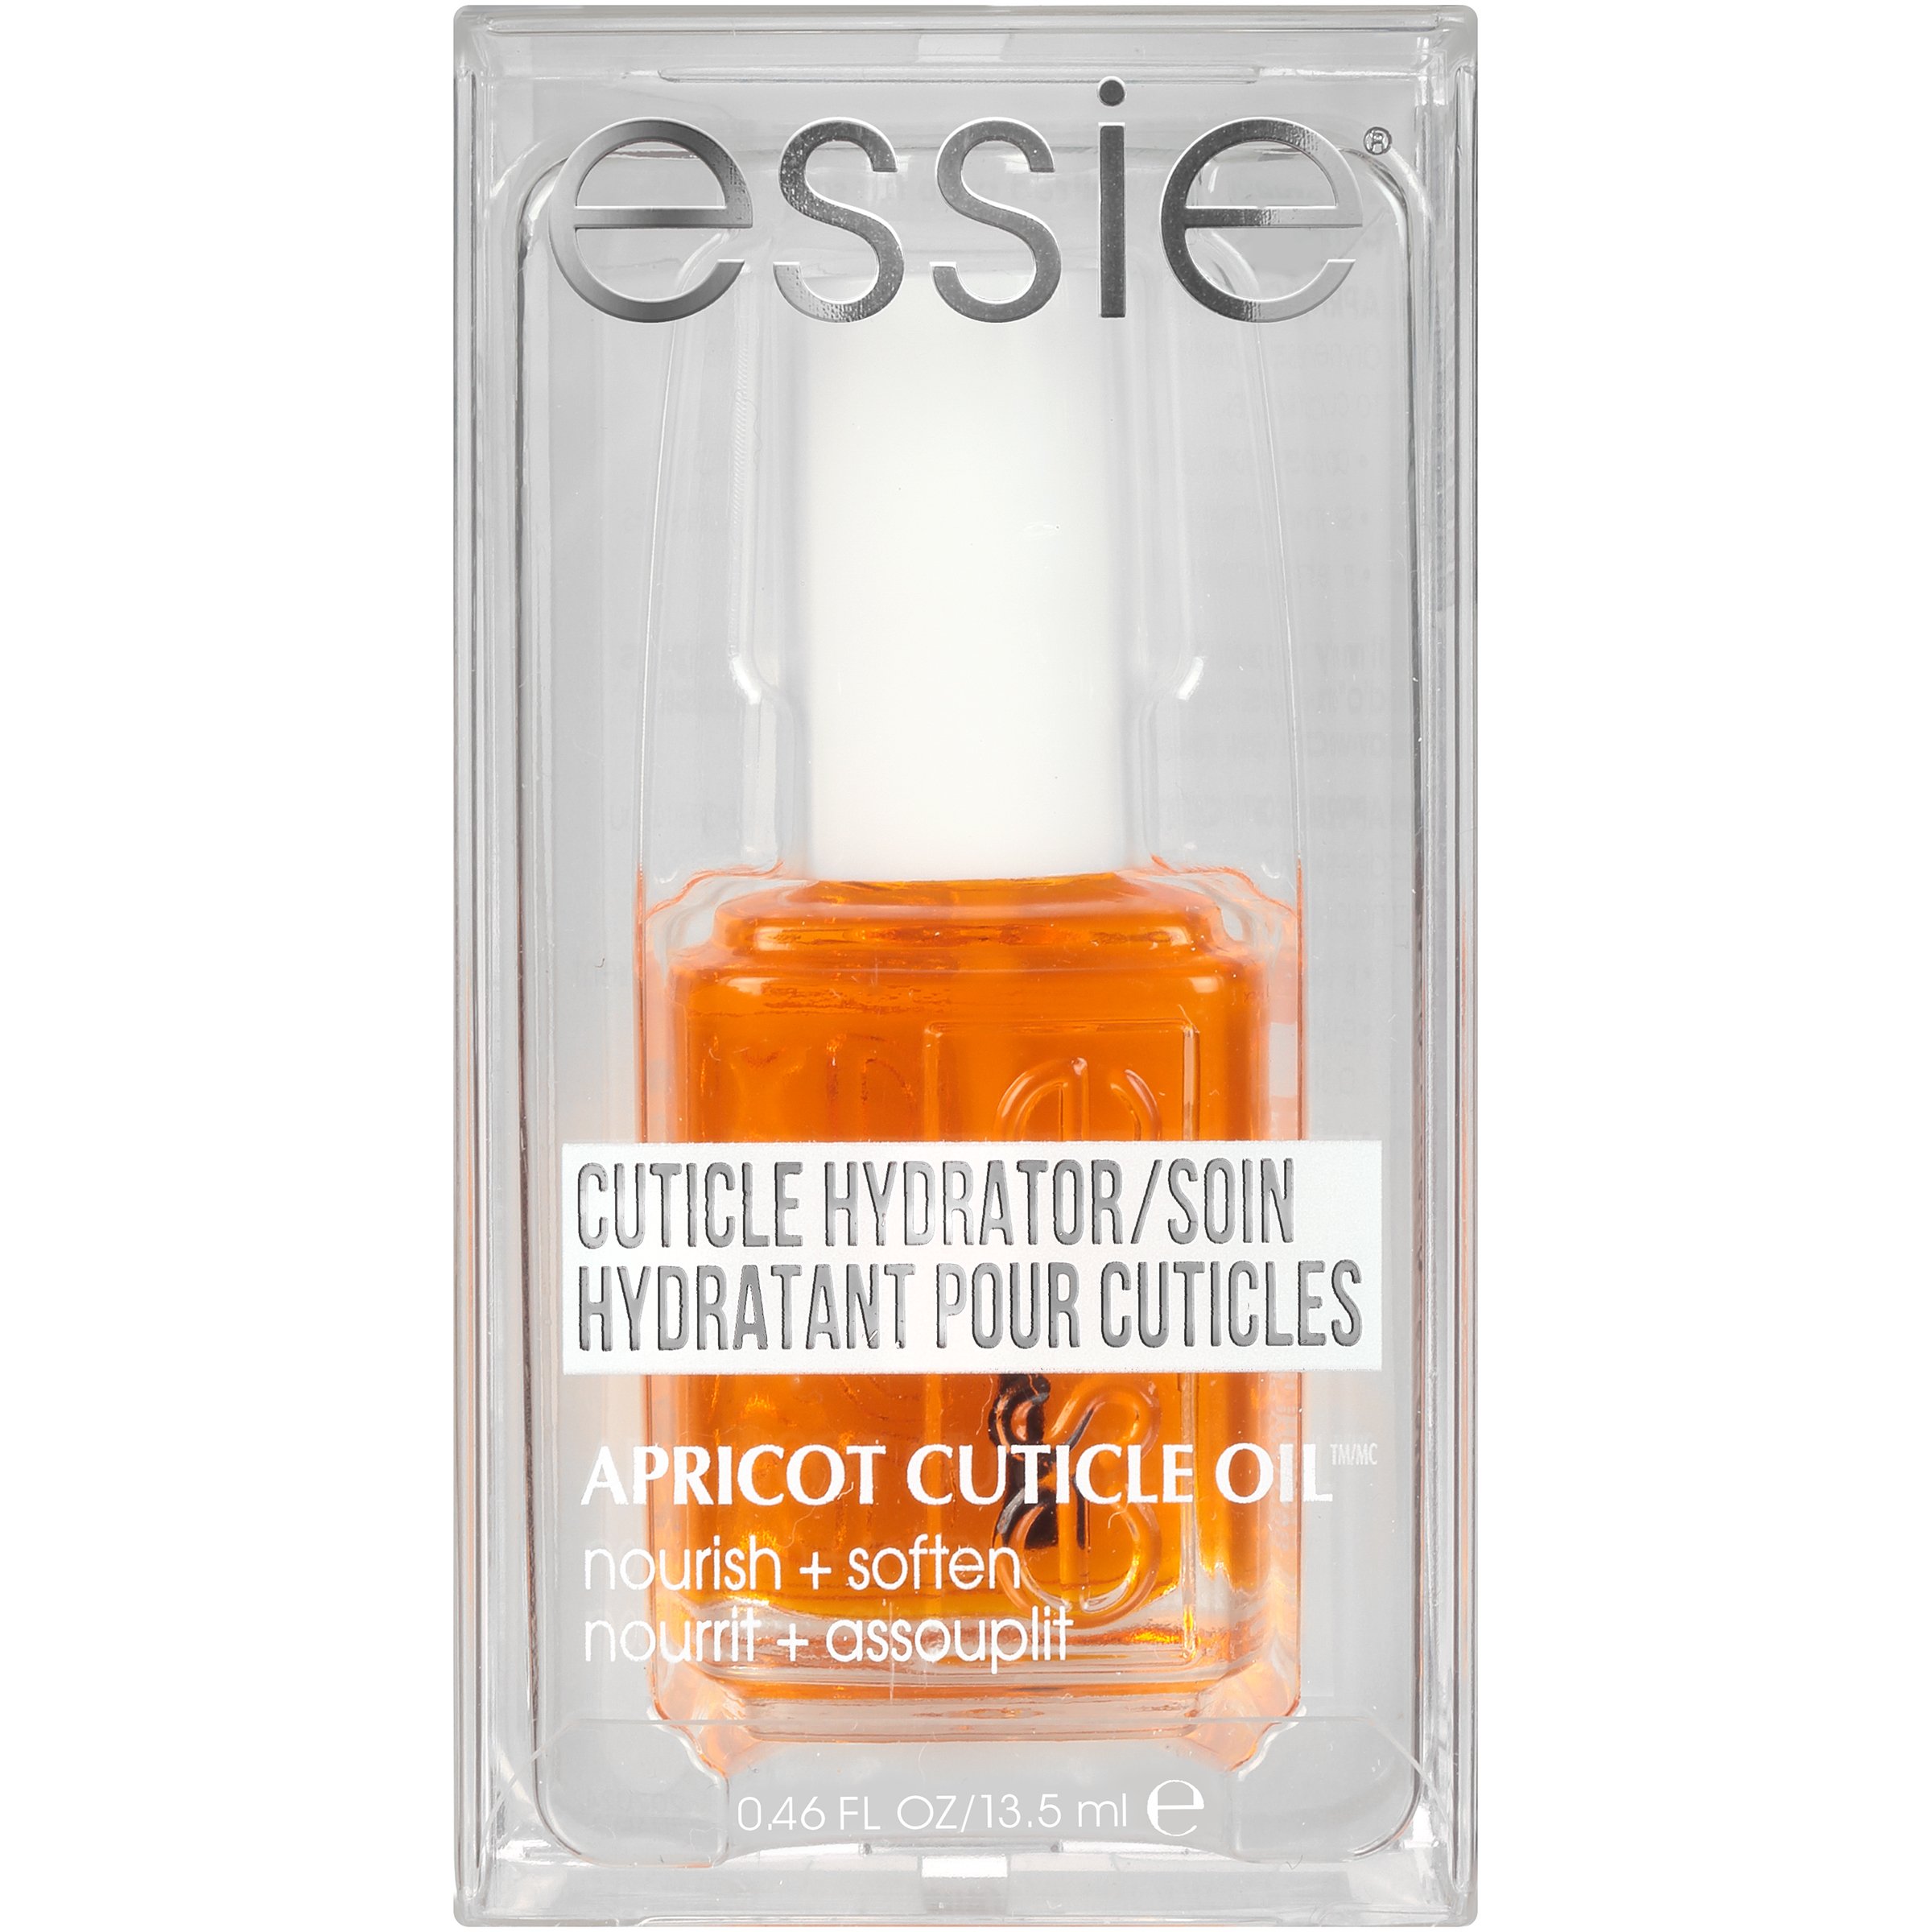 essie Apricot Cuticle Oil Nail Treatment - Shop Nails at H-E-B